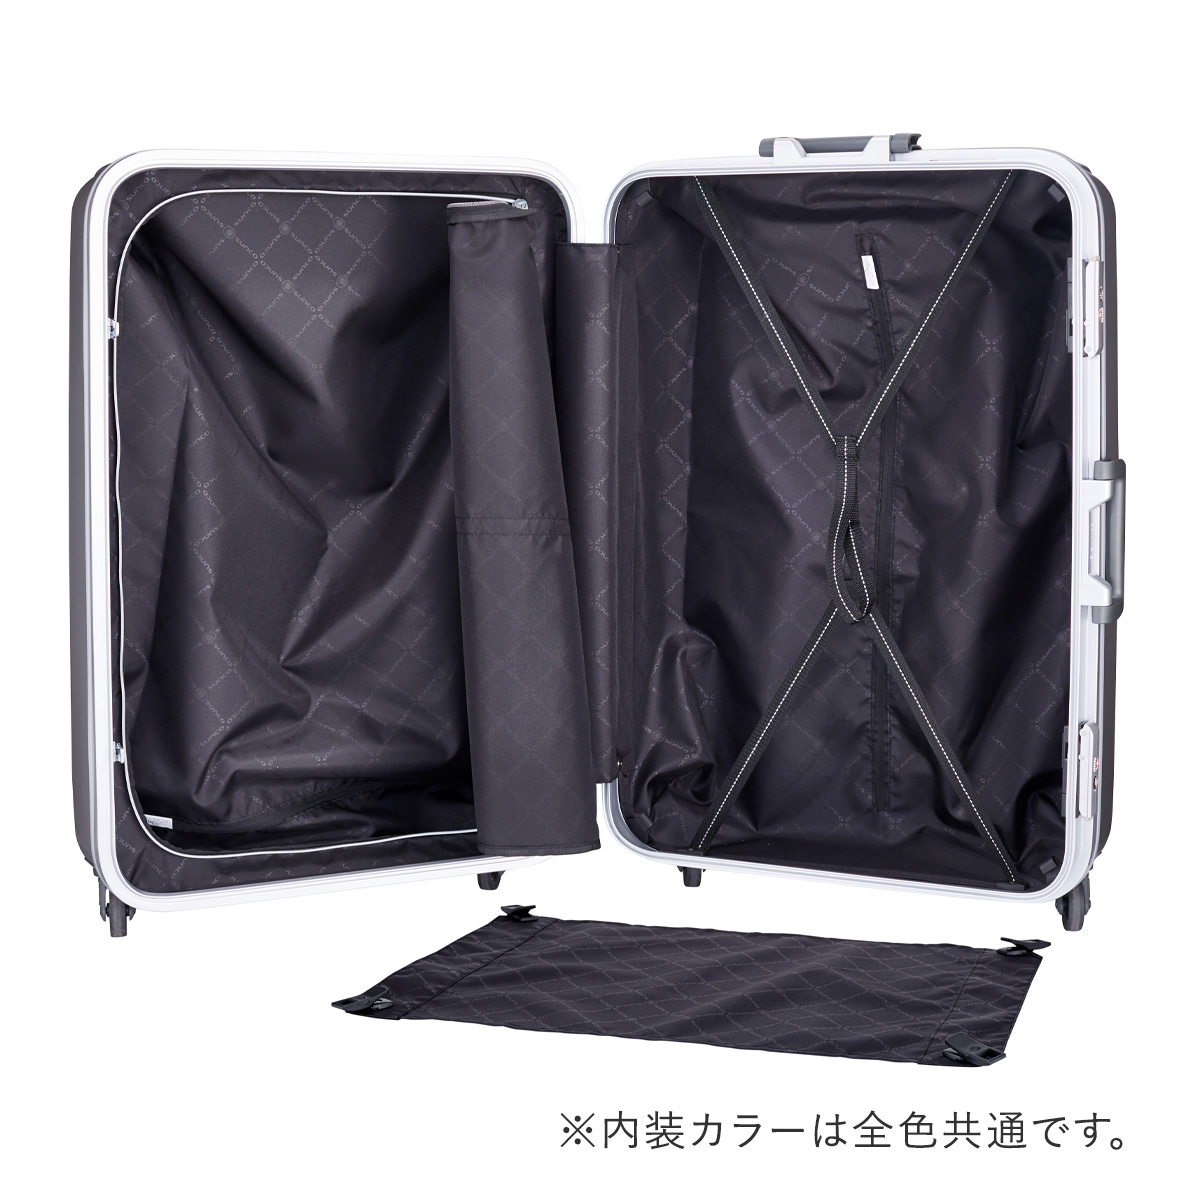 サンコー スーツケース 超軽量 MGC2-69 93L 69cm 4.3kg SUNCO SUPER LIGHTS 極軽 ゴクカル ハード フレーム  キャリーケース キャリーバッグ 双輪キャスター